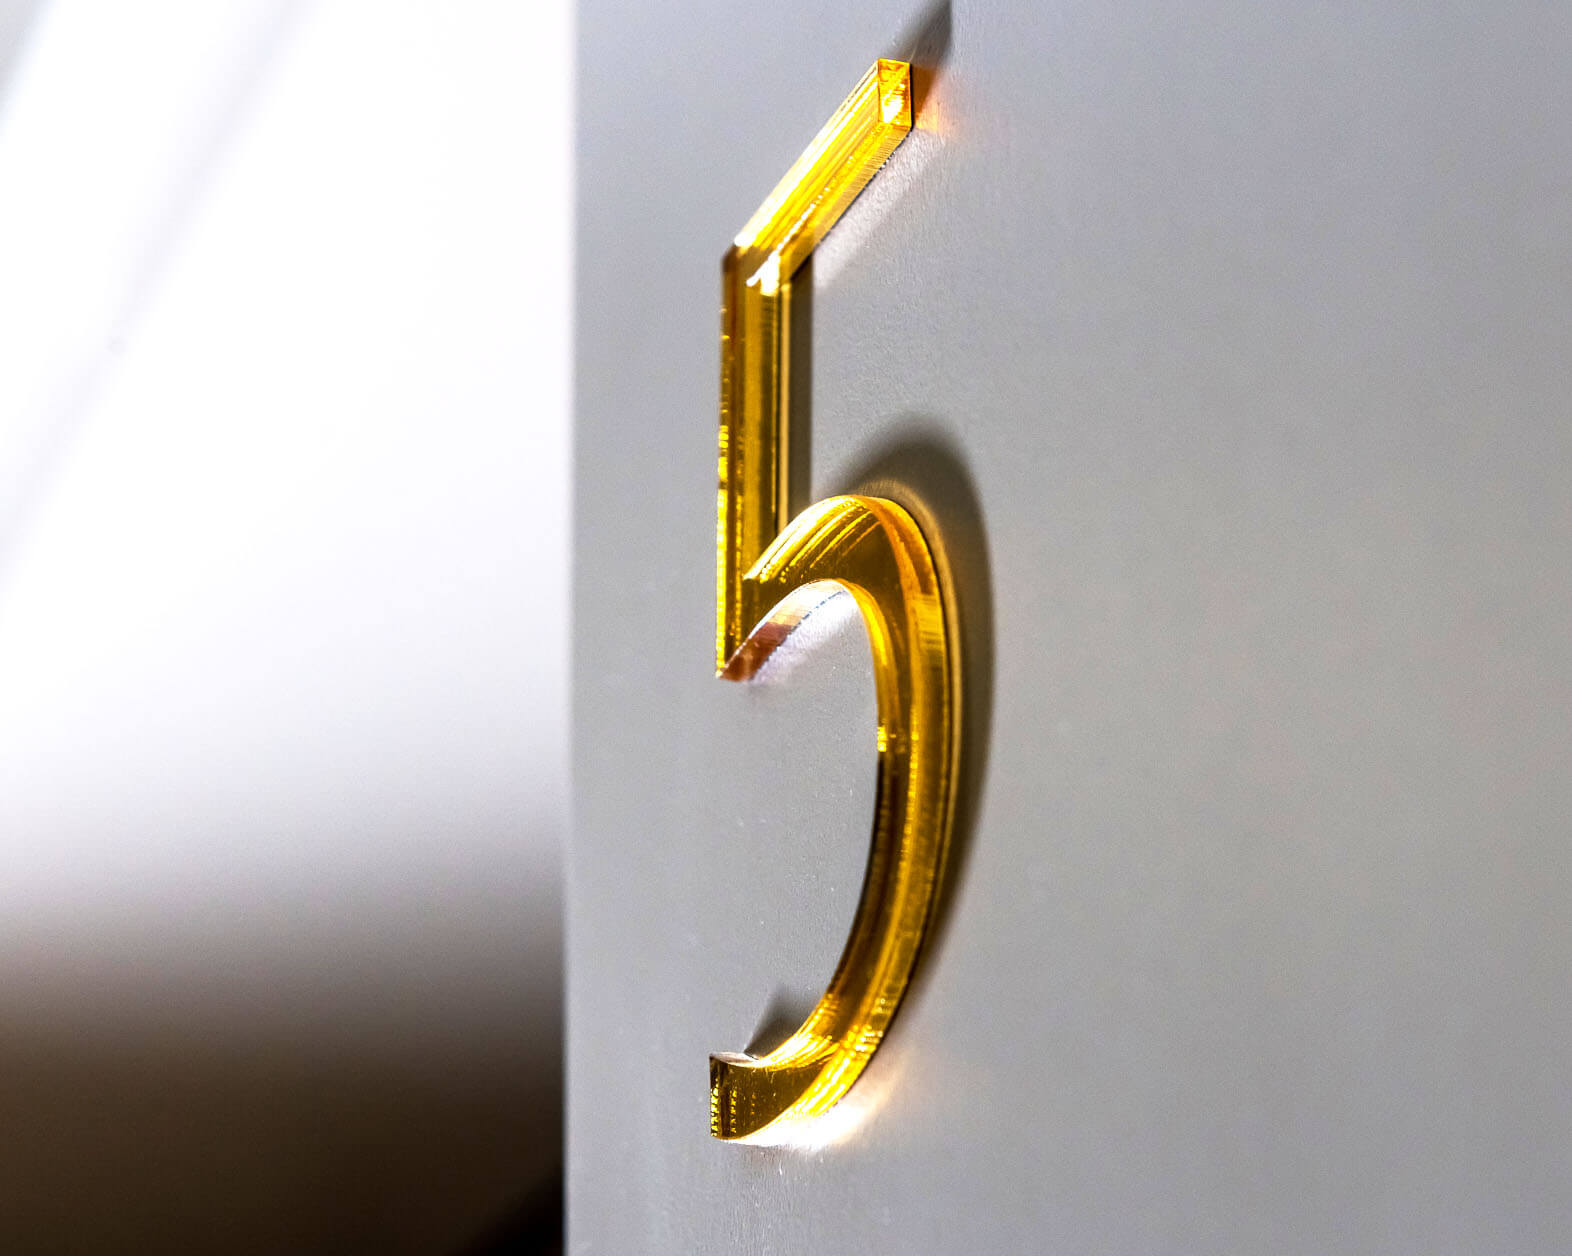 Numéros 5 portes - 5;marquage des bâtiments - marquage - intérieur - marquage - pièces - numéros